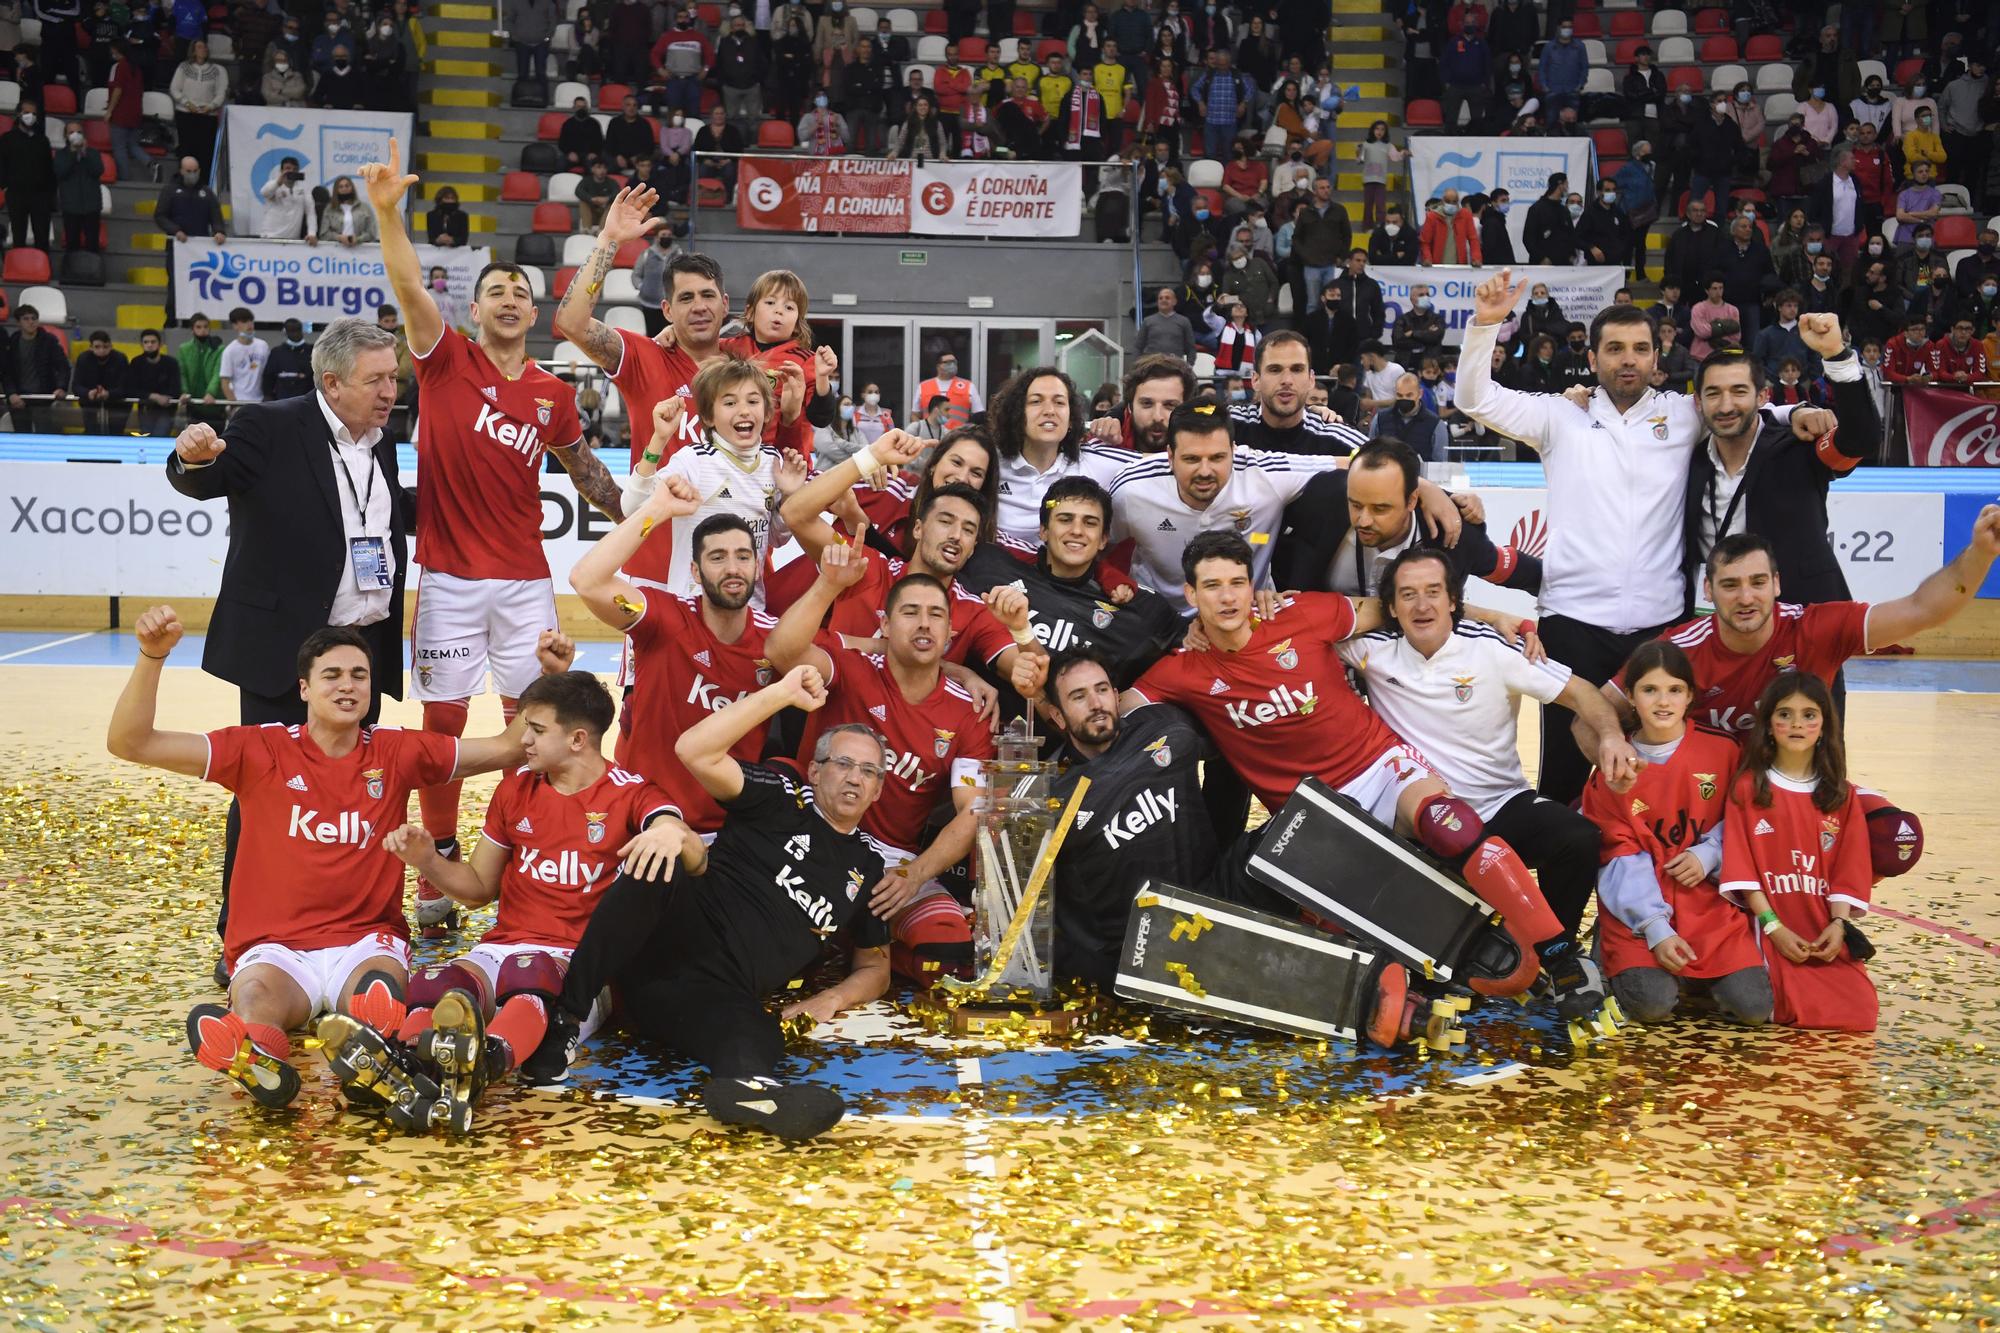 El Benfica se lleva el título de la Golden Cup 2022 en A Coruña